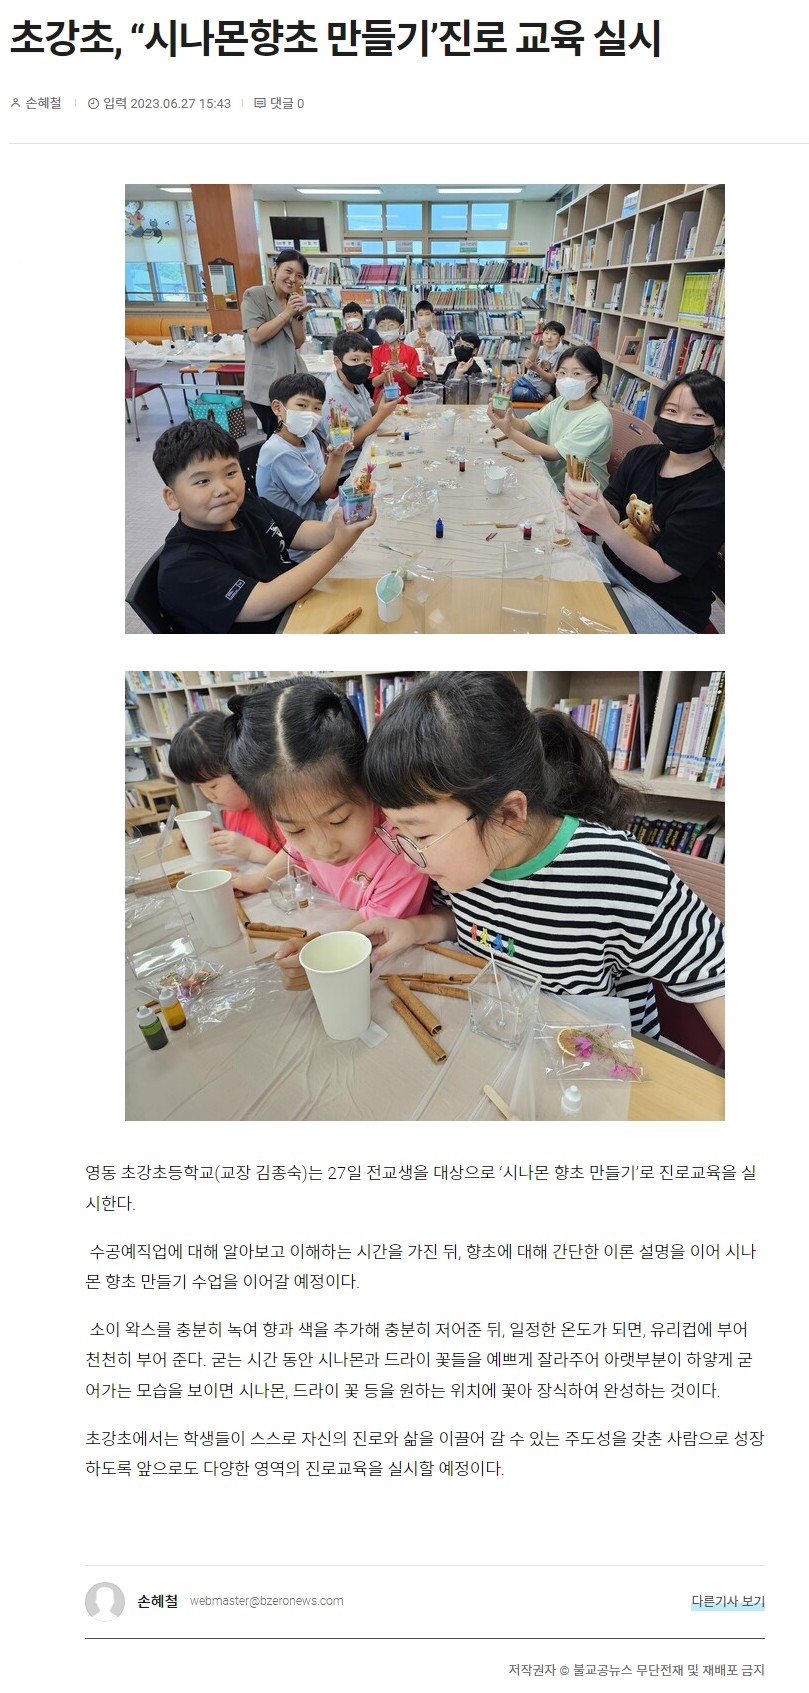 초강초, 시나몬향초 만들기 진로교육 실시(20230627)2